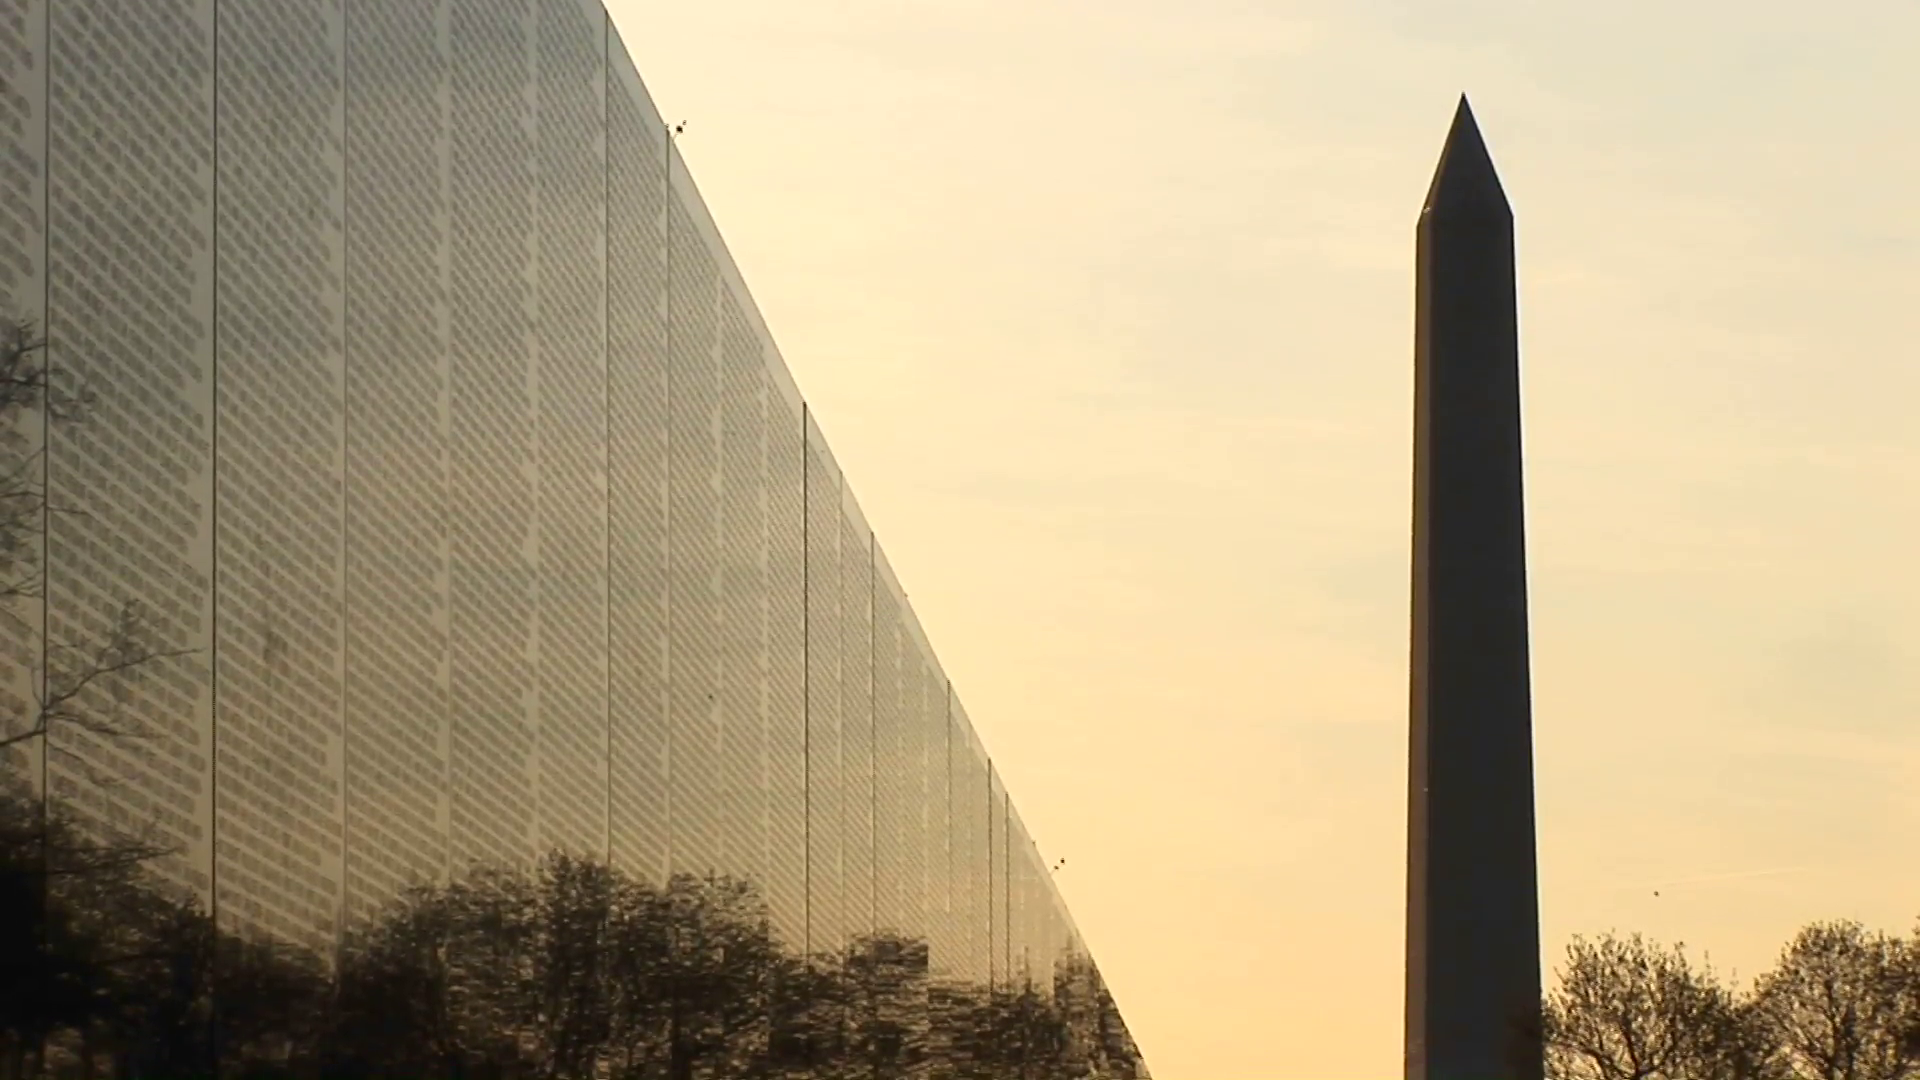 Washington monument silhouette photo